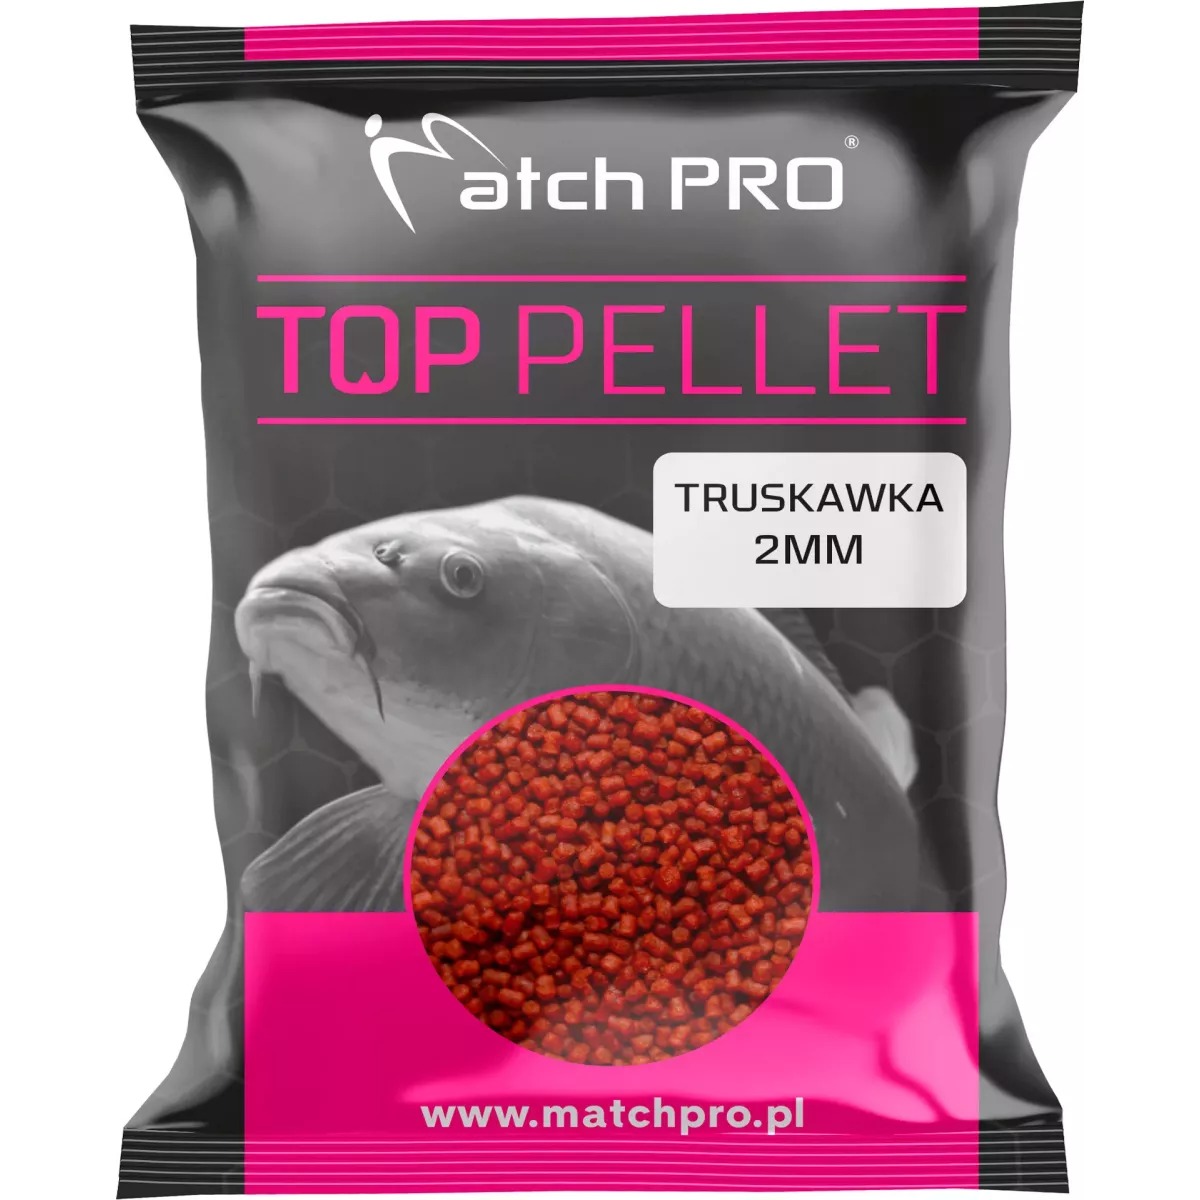 Pellet MatchPro TOP 2mm - TRUSKAWKA